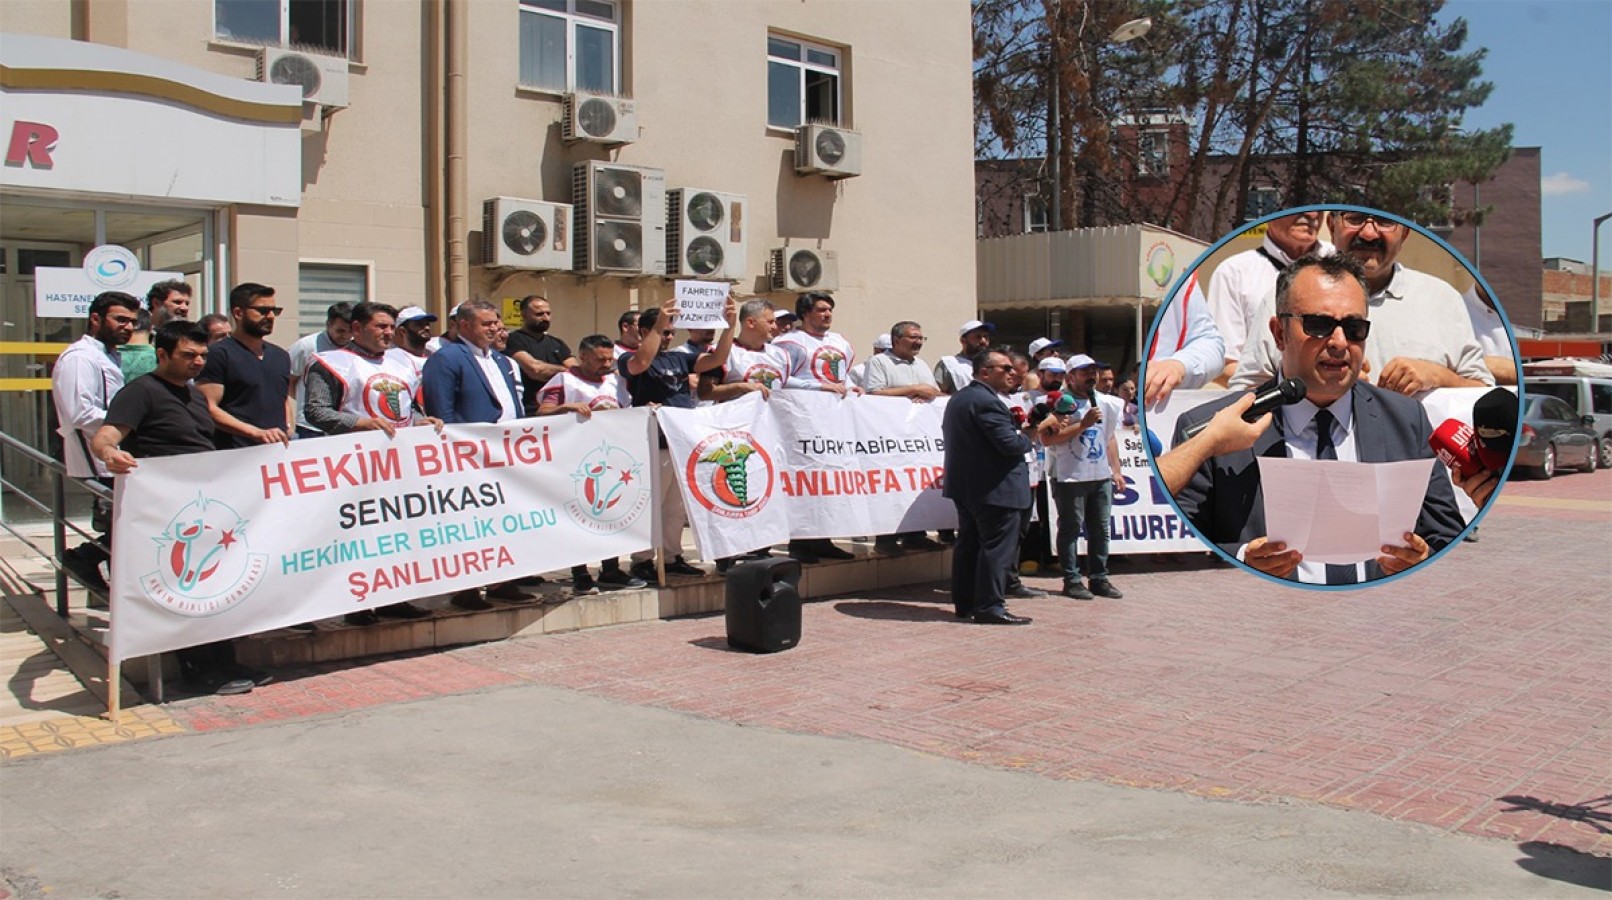 Şanlıurfa'da sağlık çalışanları Meclis’teki düzenlemeye tepki göstererek iş bıraktı!;